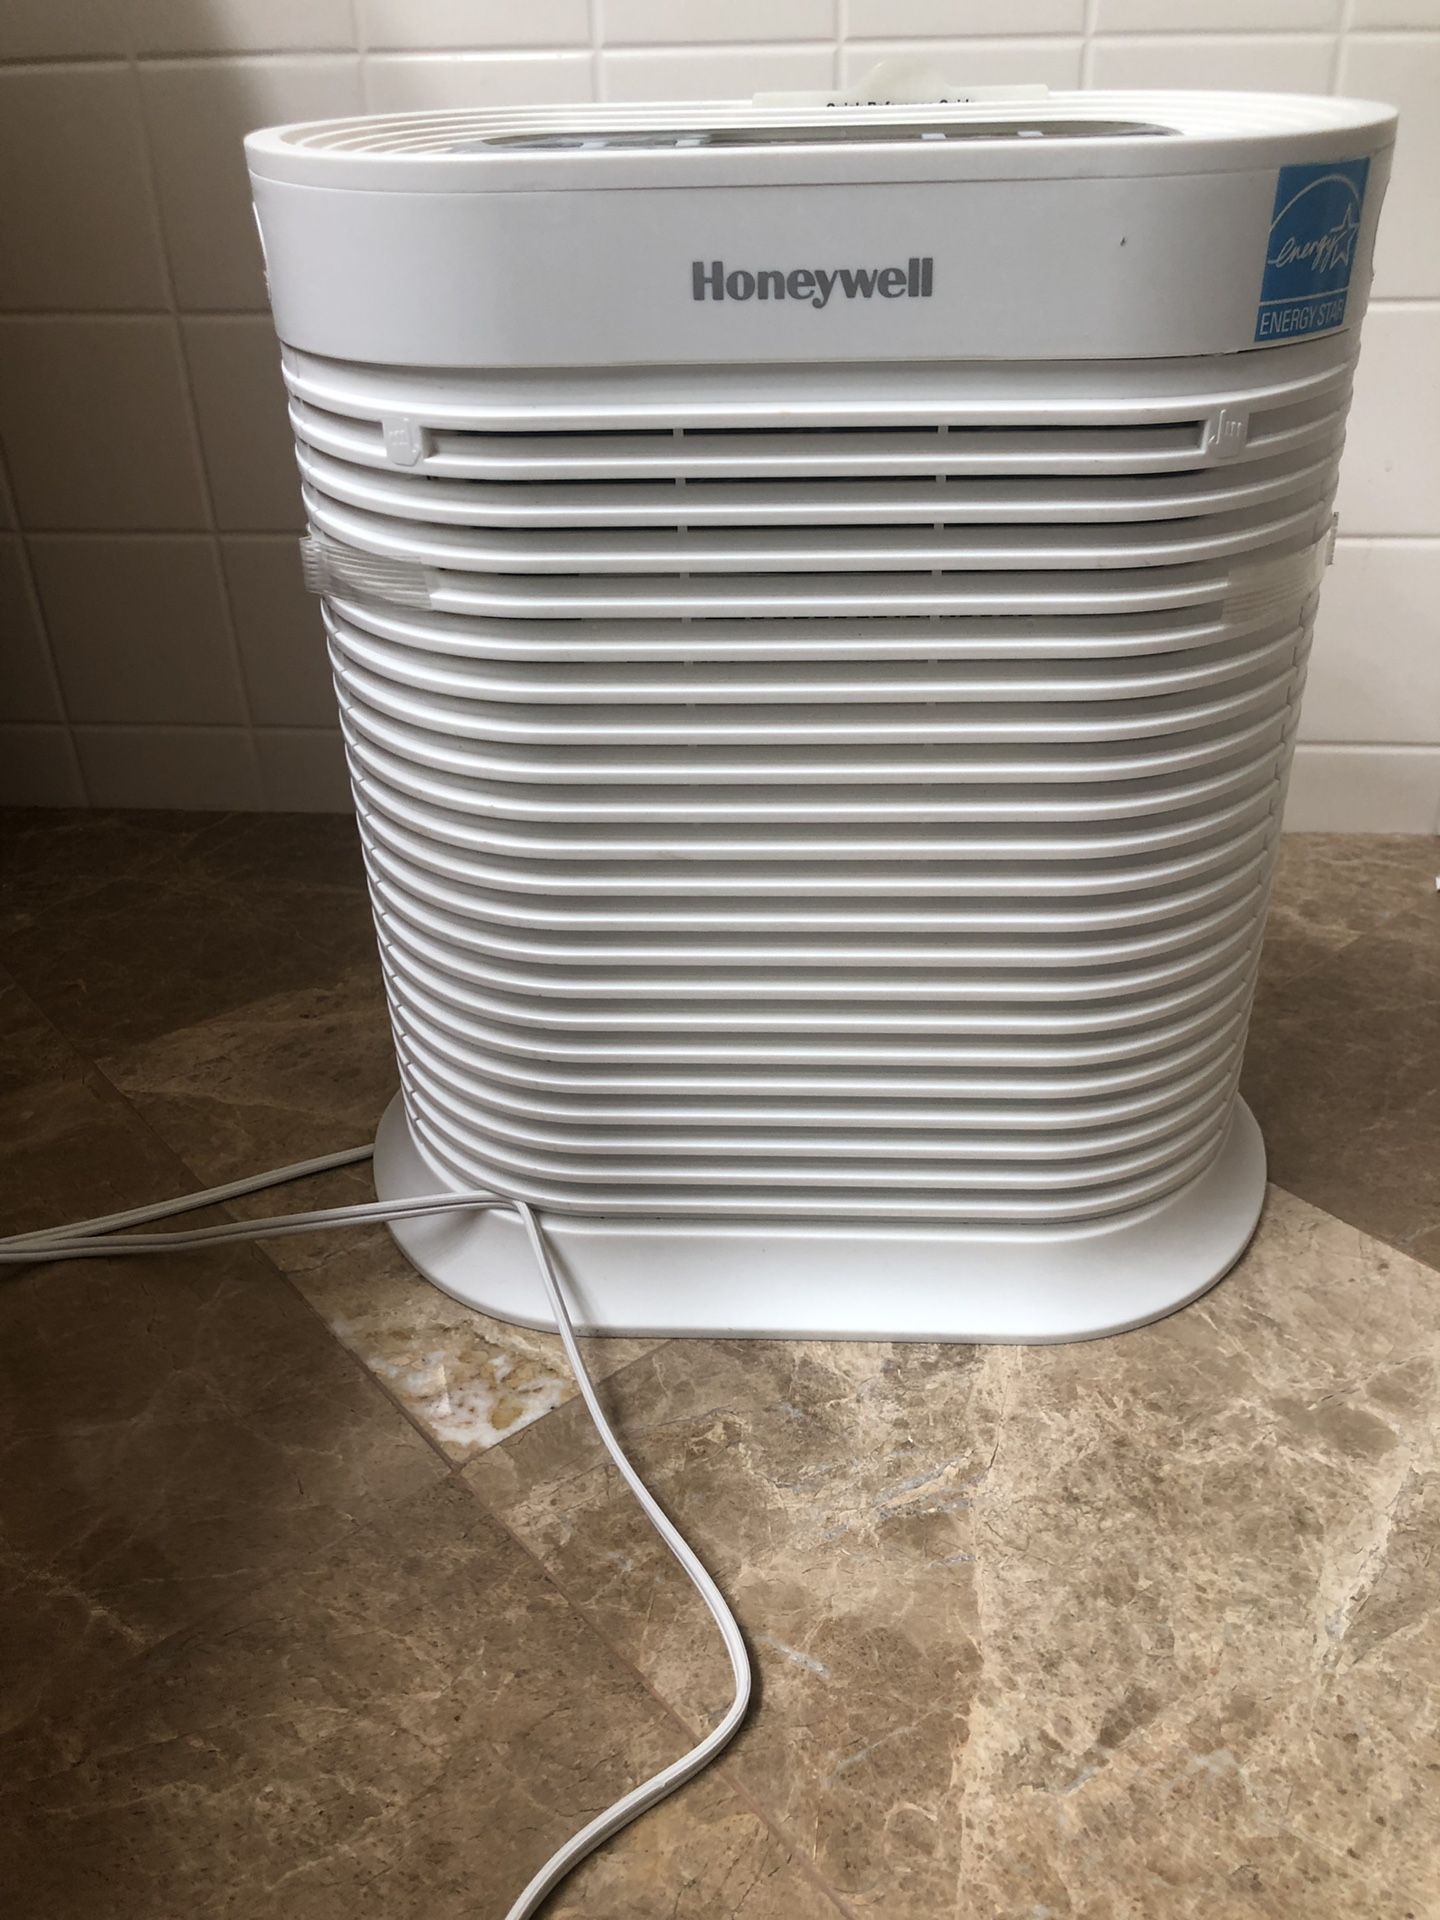 Honeywell air purifier